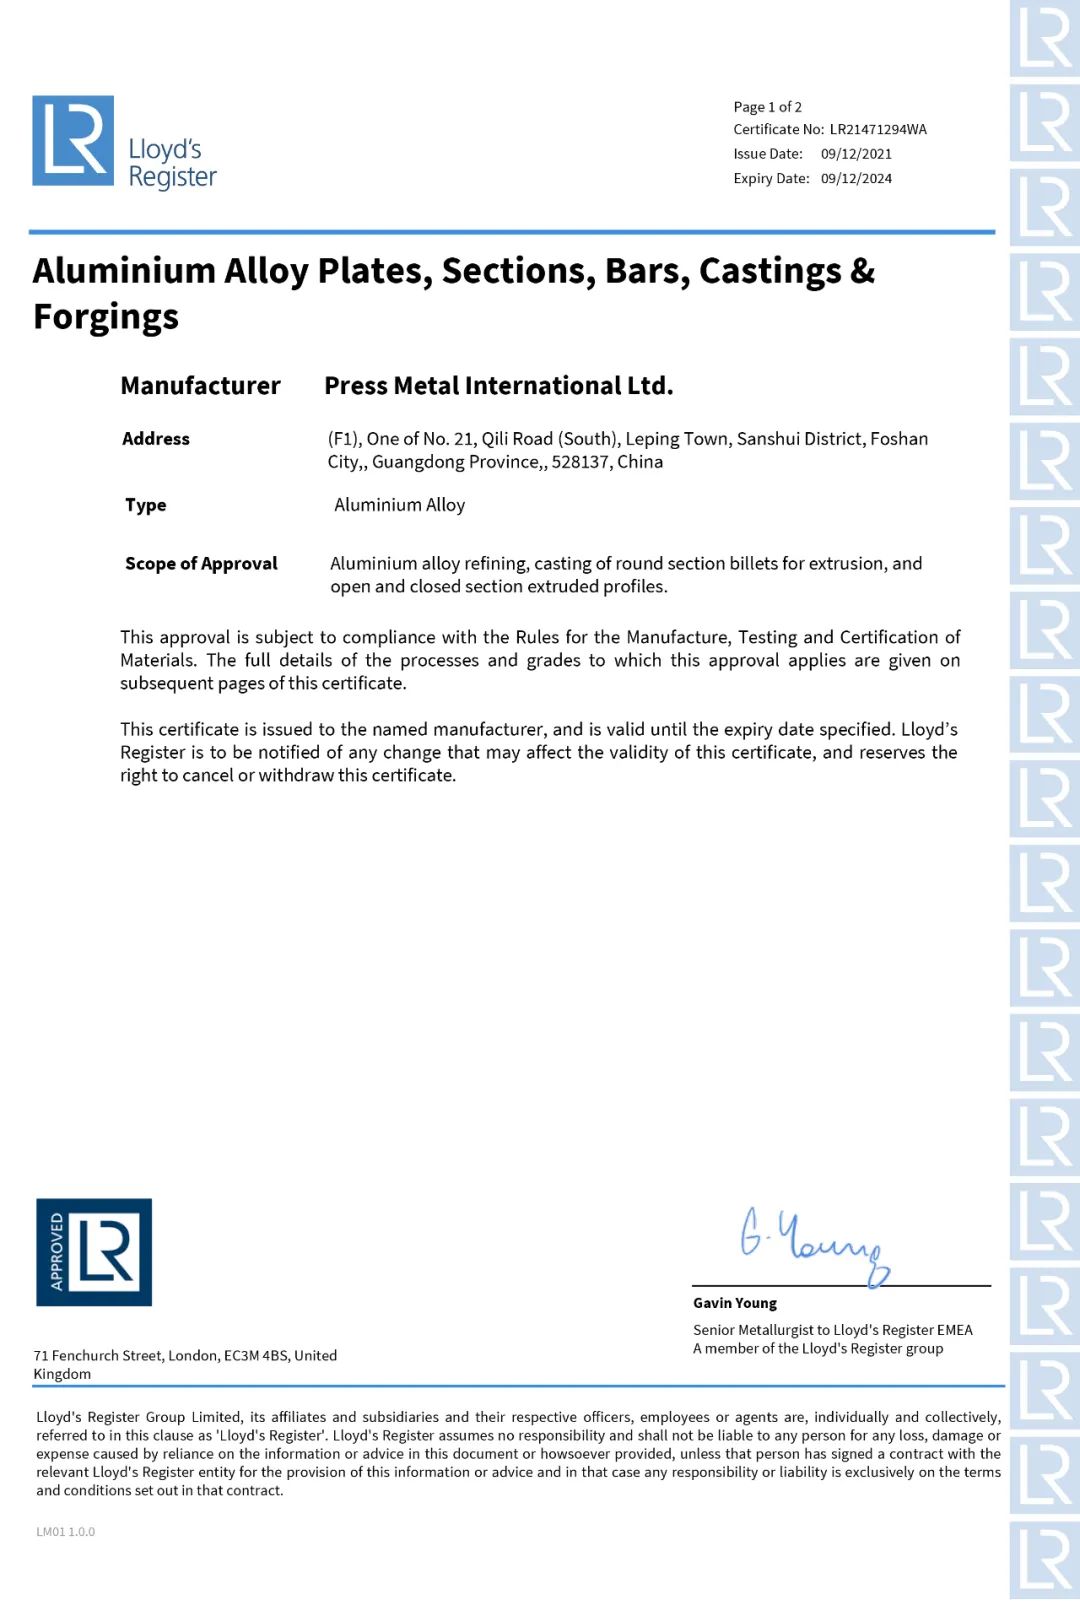 澳美鋁業獲得英國勞氏船級社工廠認可證書